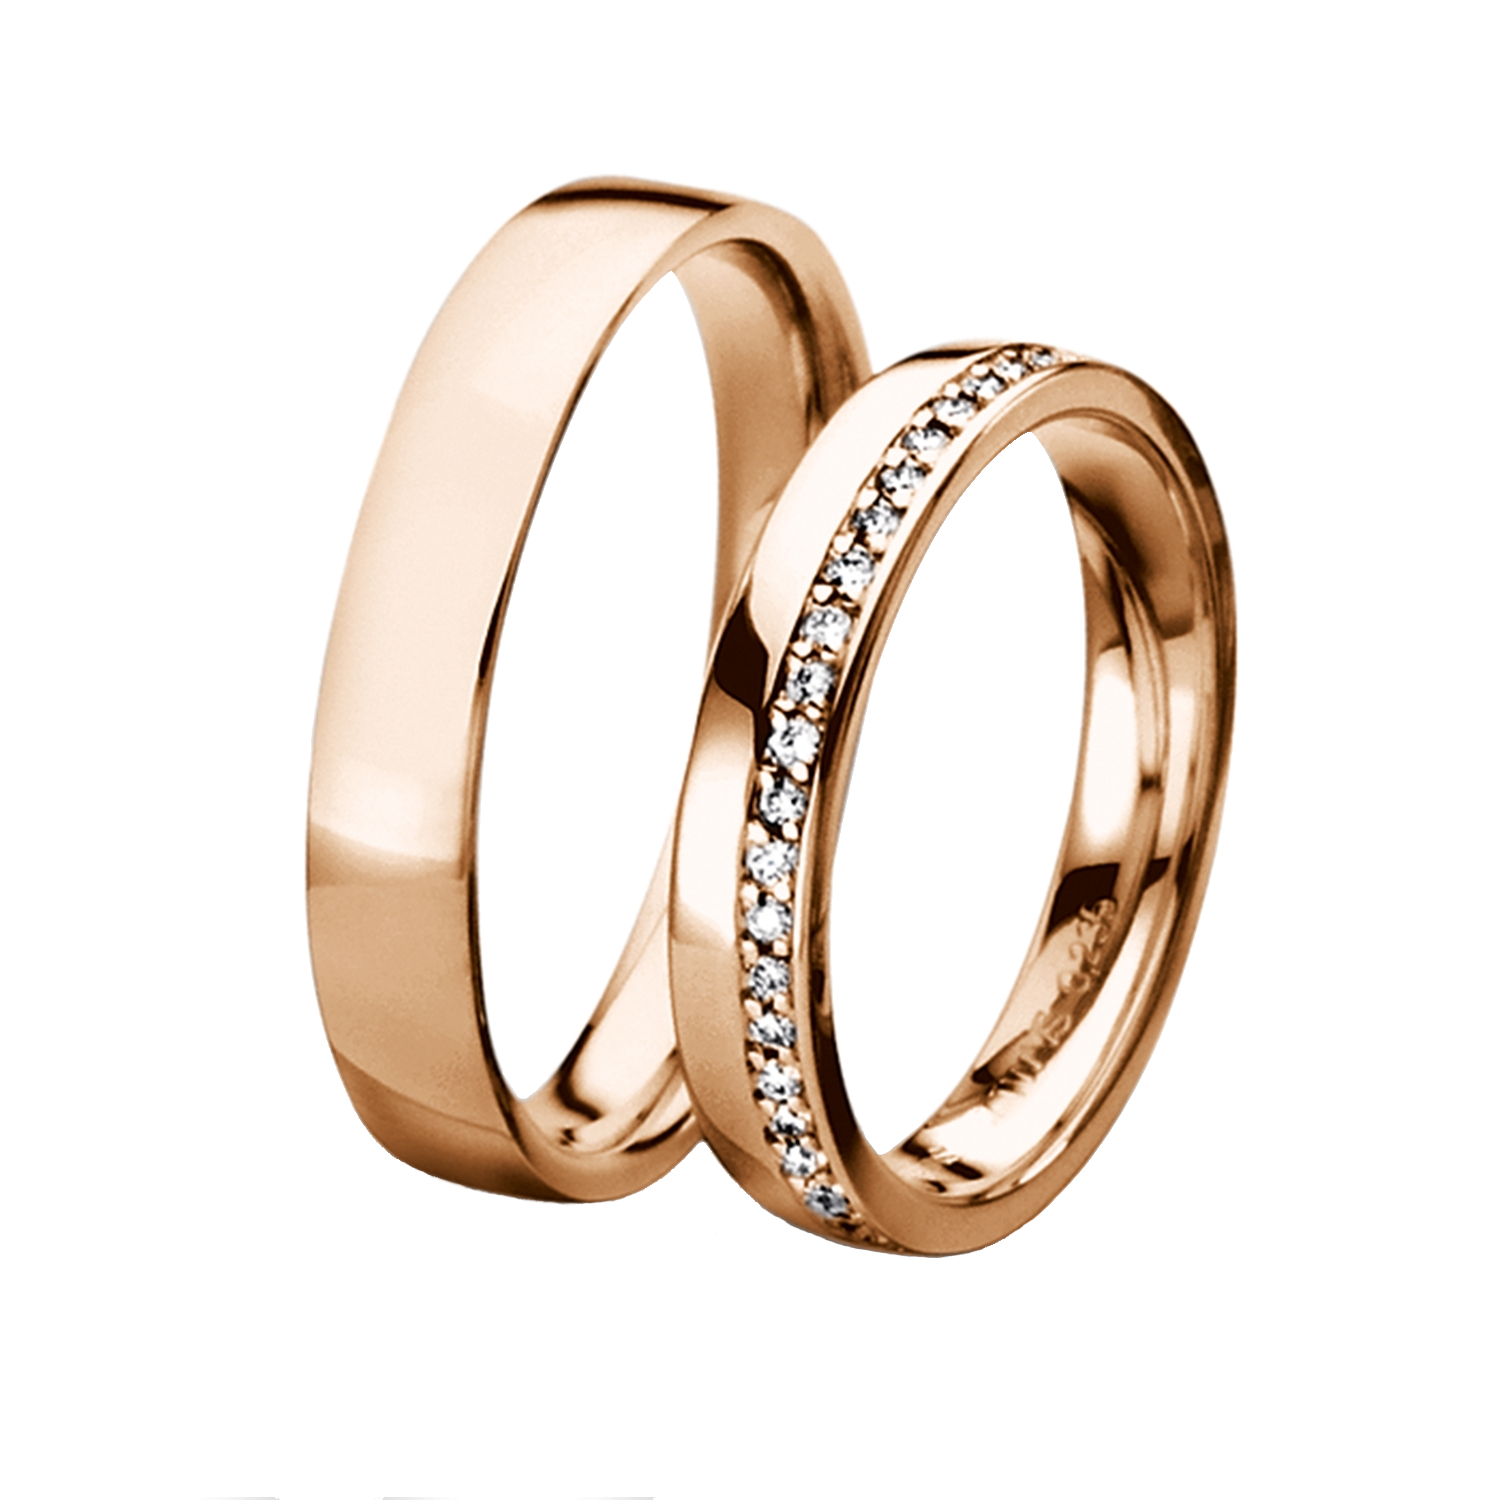 Men's Jewellery  FURRER JACOT, Wedding rings, SKU: 71-26700-0-0/045-73-0-63-0 | watchphilosophy.co.uk